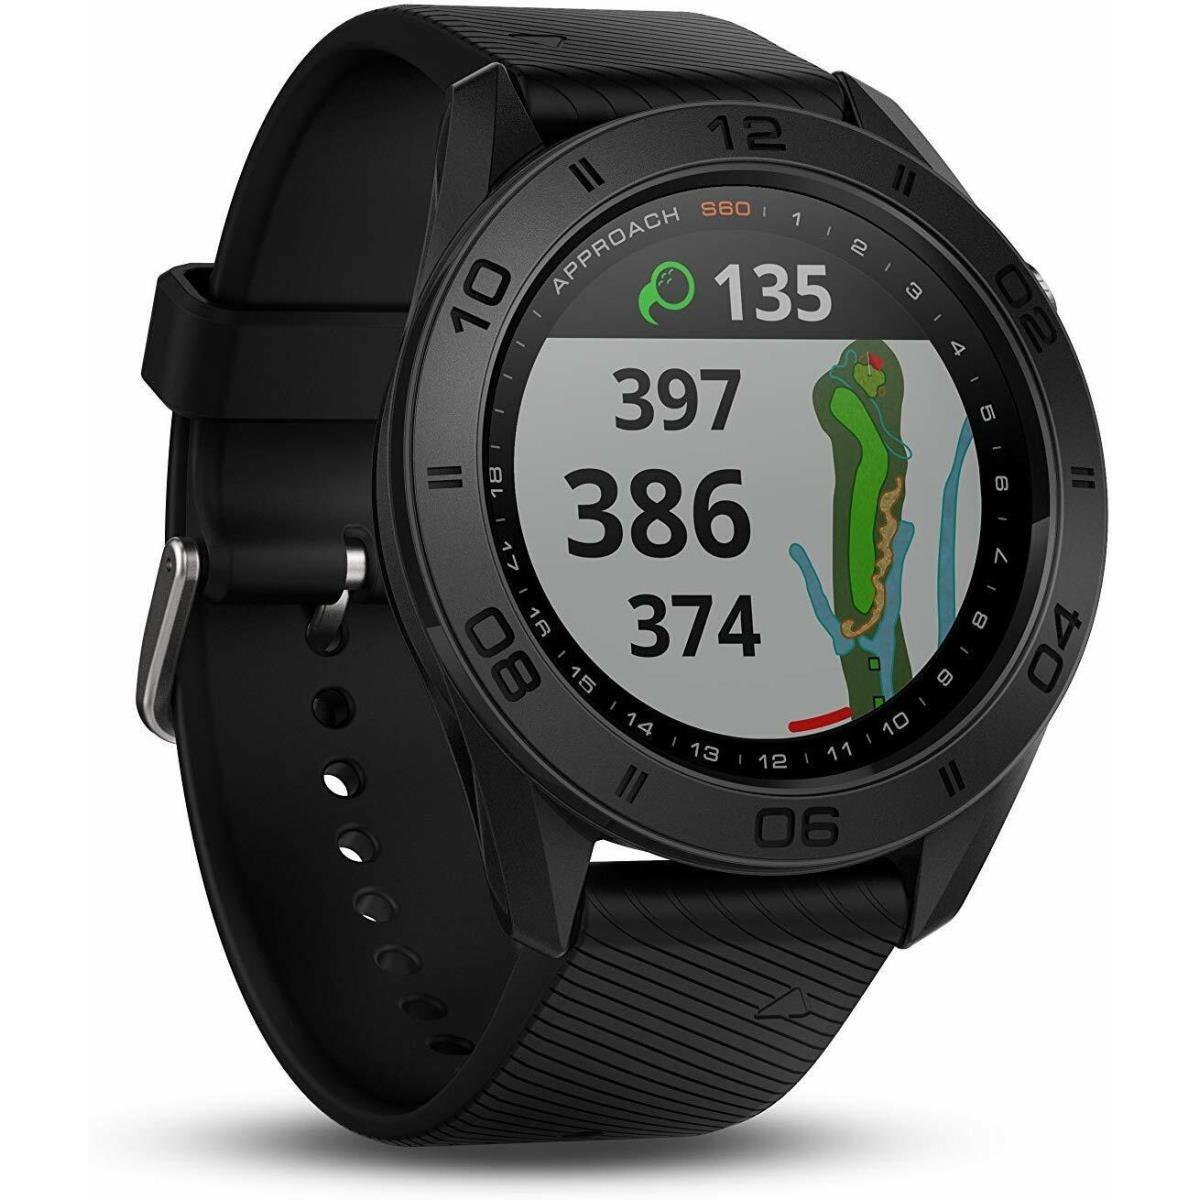 Garmin Approach S60 Golf Watch Gps Smart Watch Touchscreen Display Black - Black